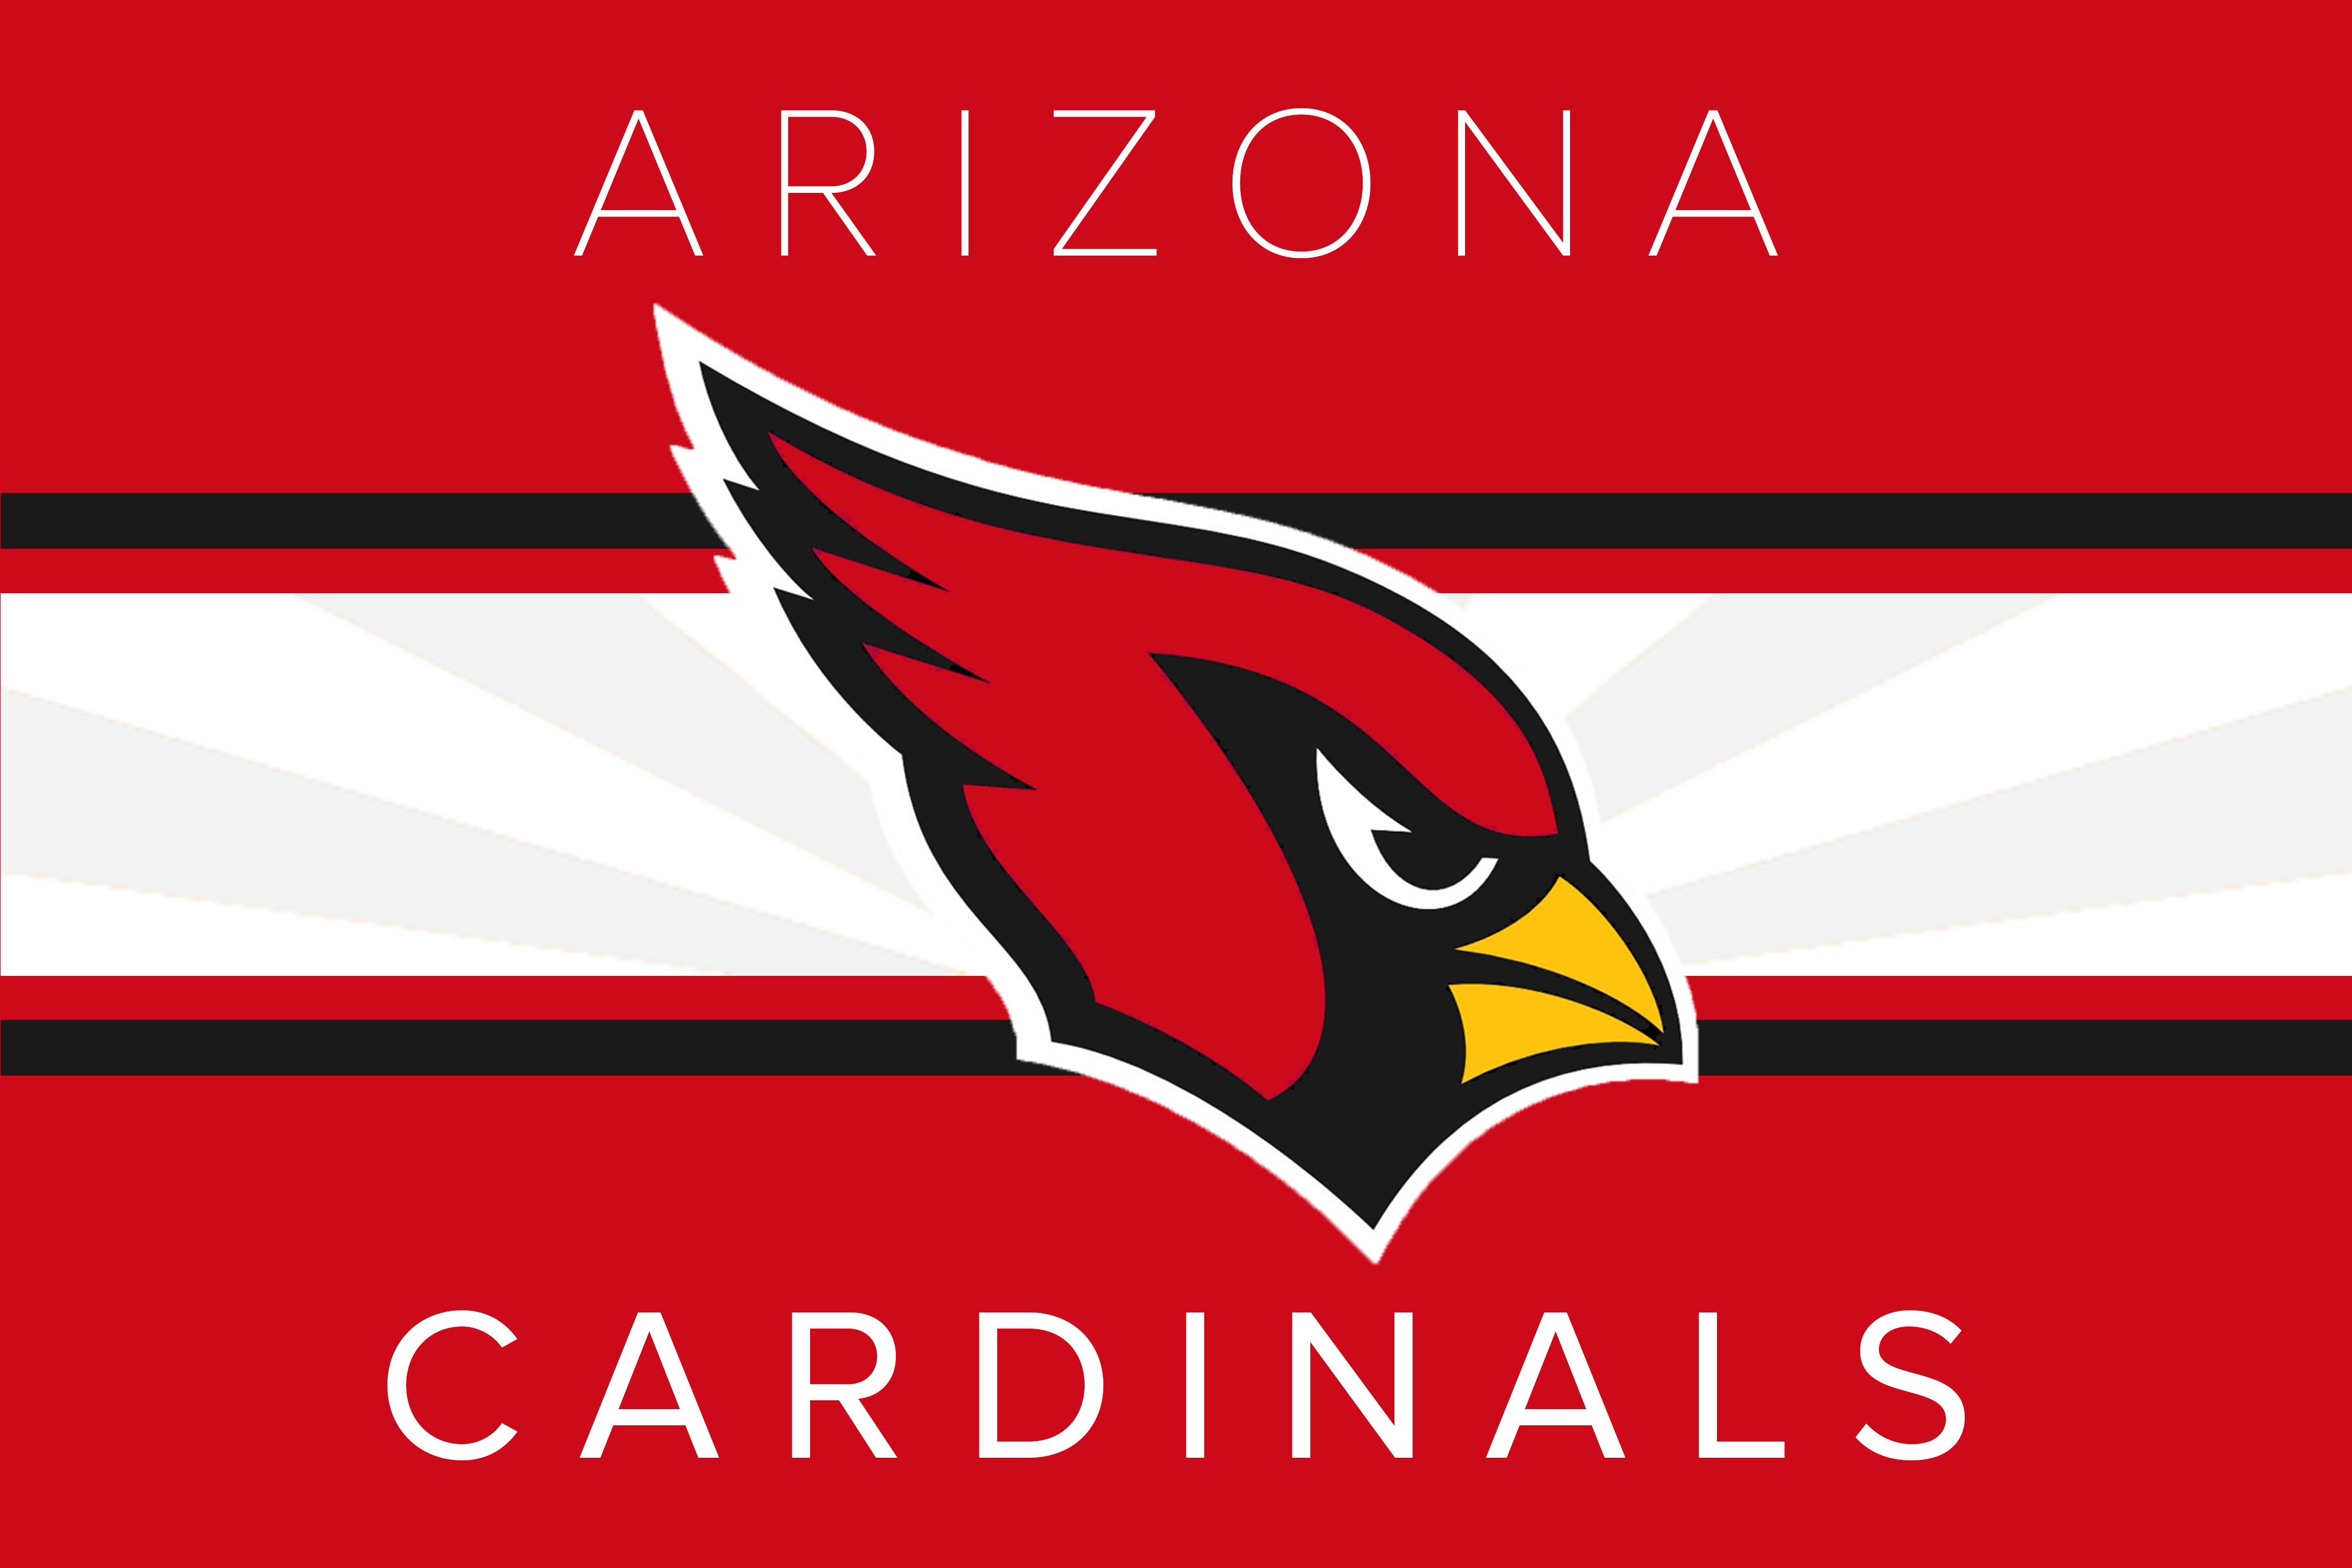 Oa17Ykw.png - Arizona Cardinals, Transparent background PNG HD thumbnail